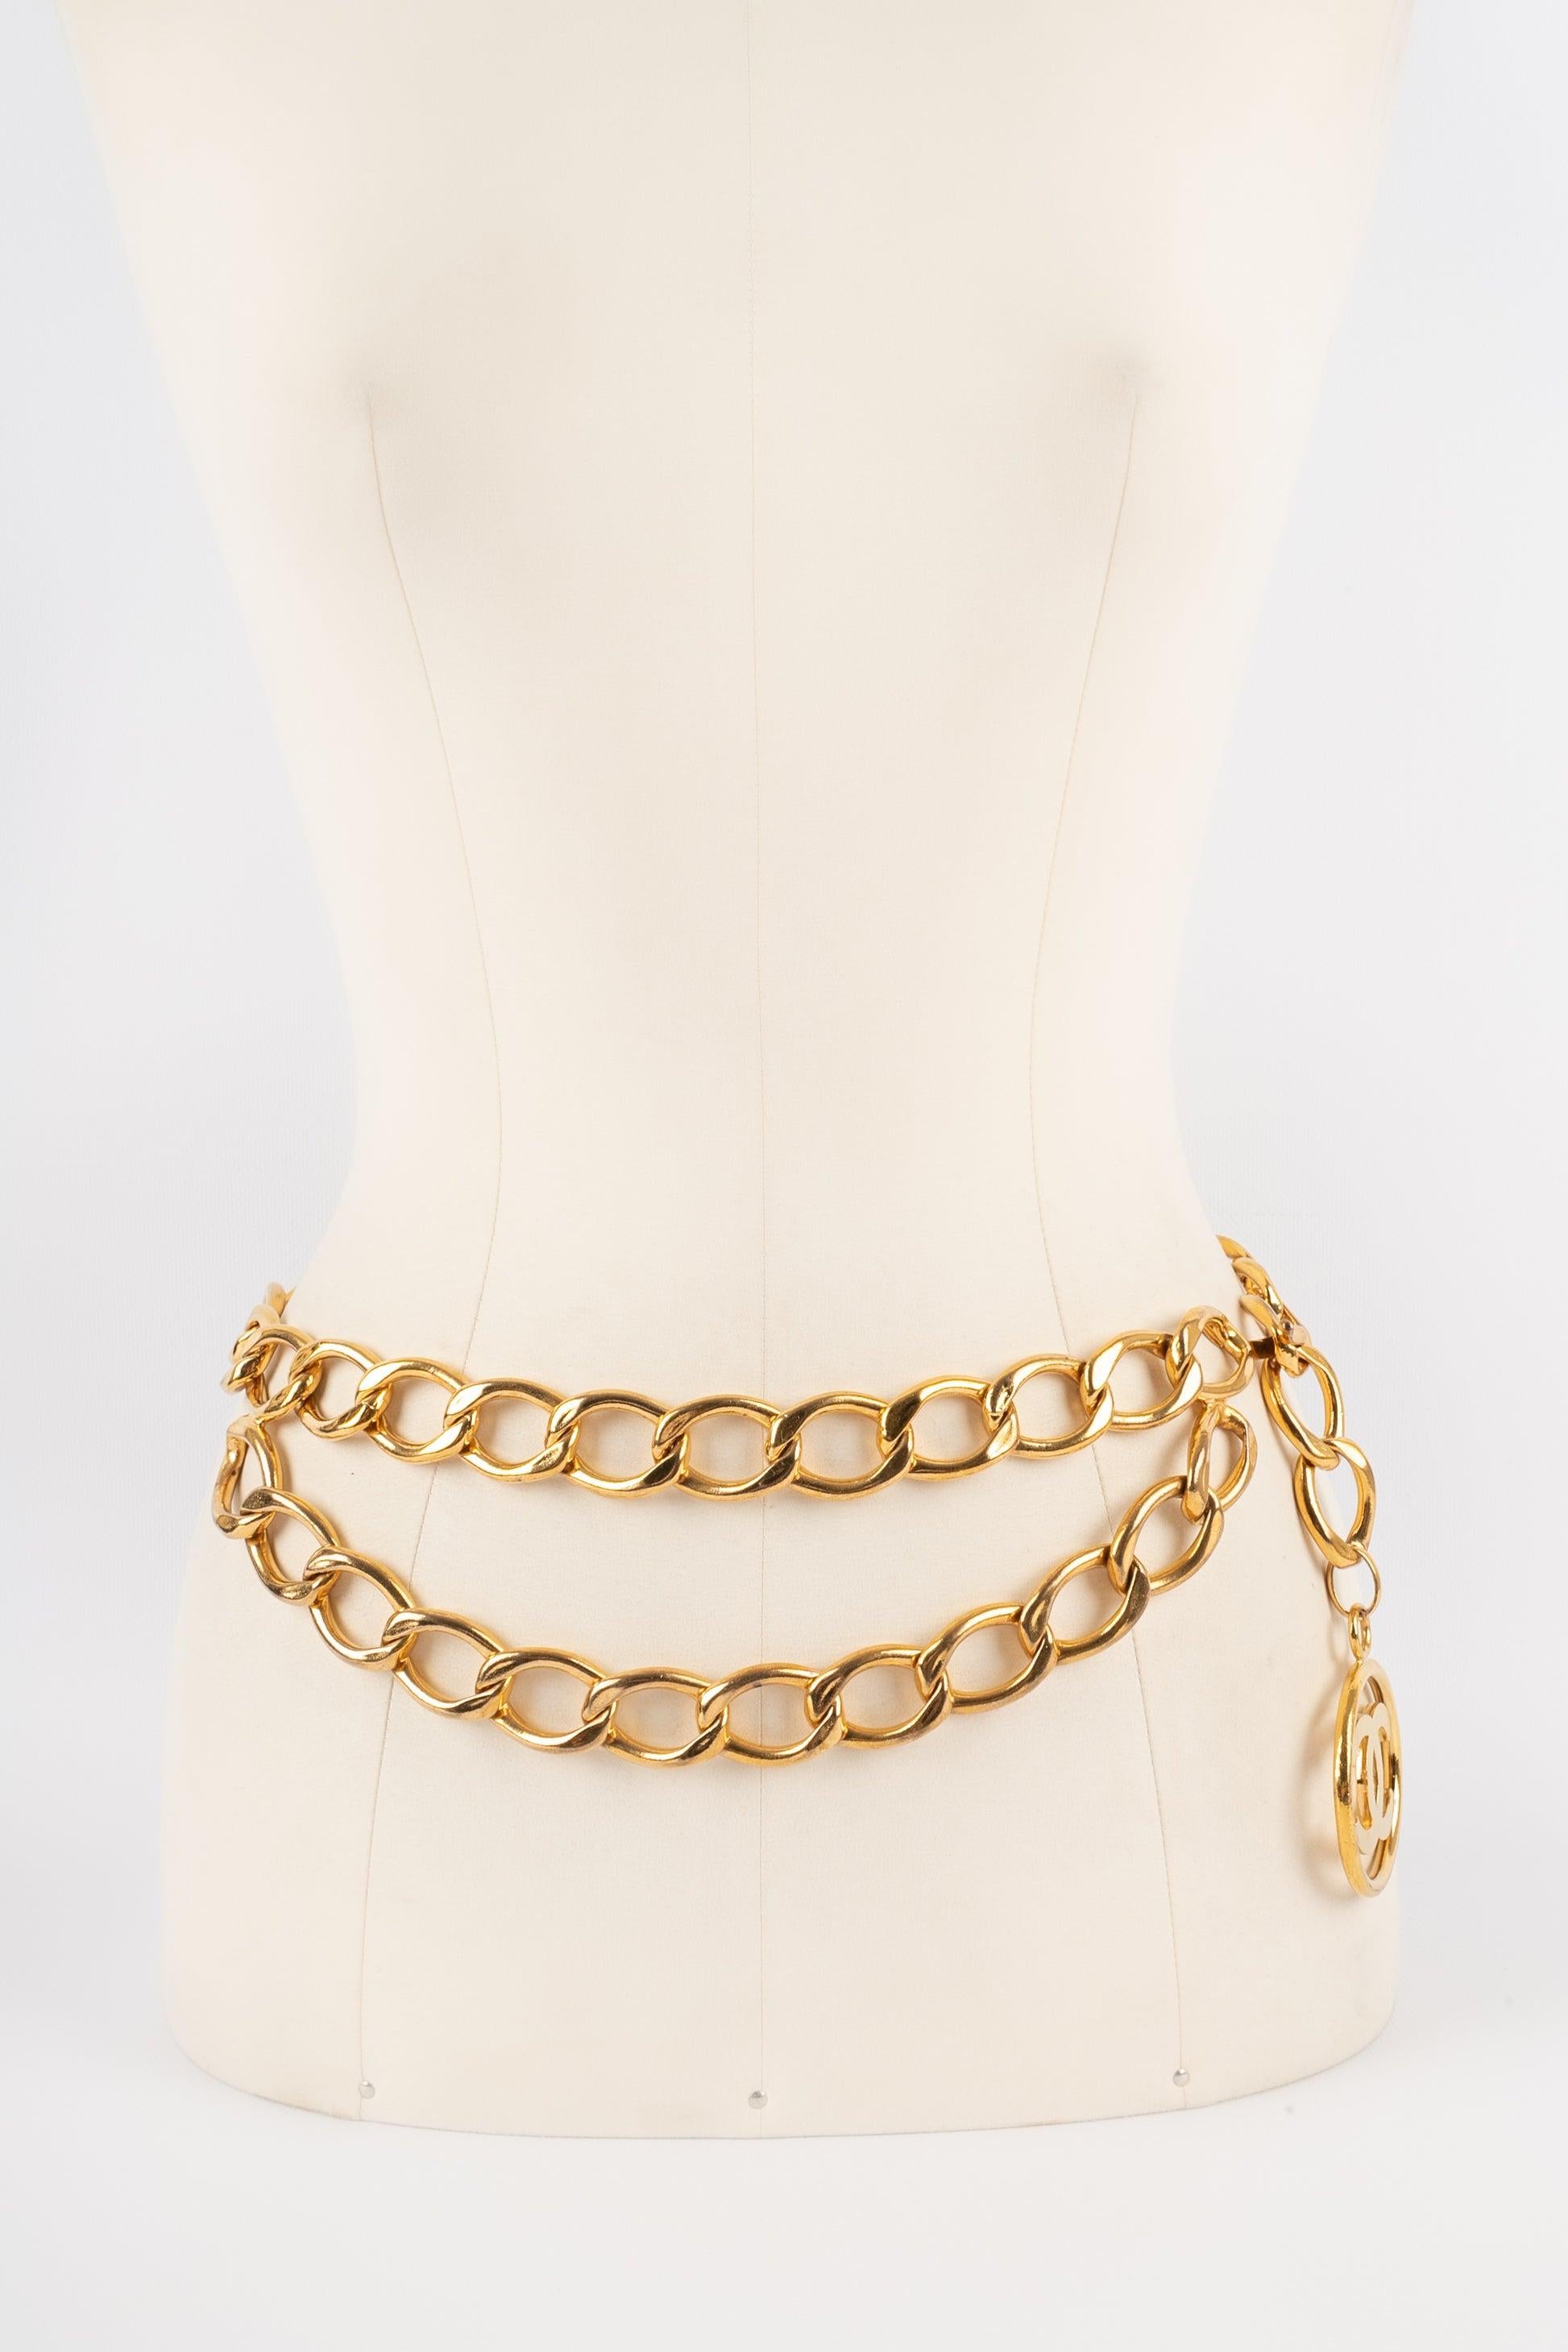 Women's Chanel Golden Metal Belt, 2009